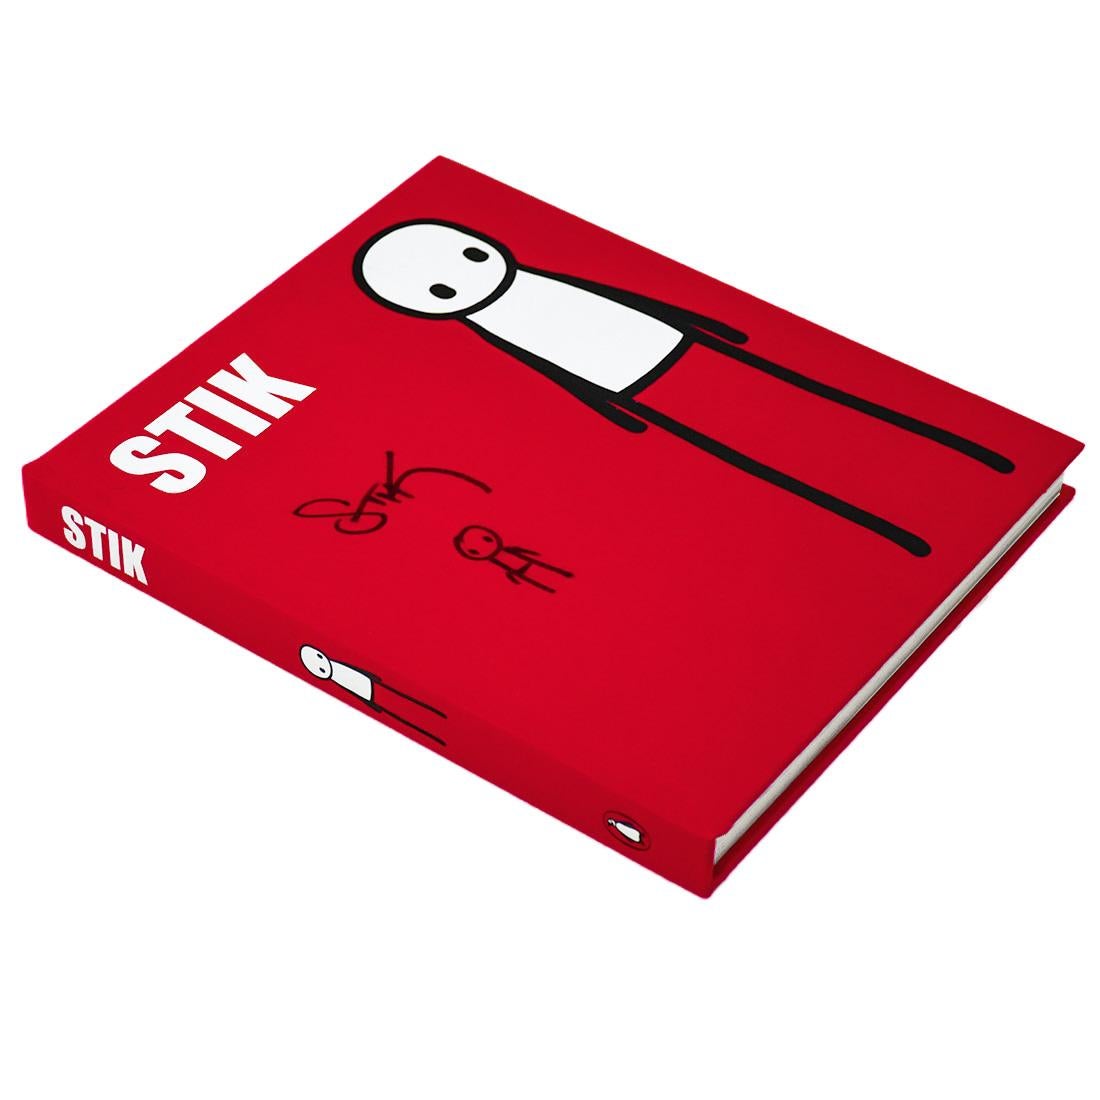 STIK Buch (Hand signiert mit Zeichnung) (Zeitgenössisch), Art, von Stik